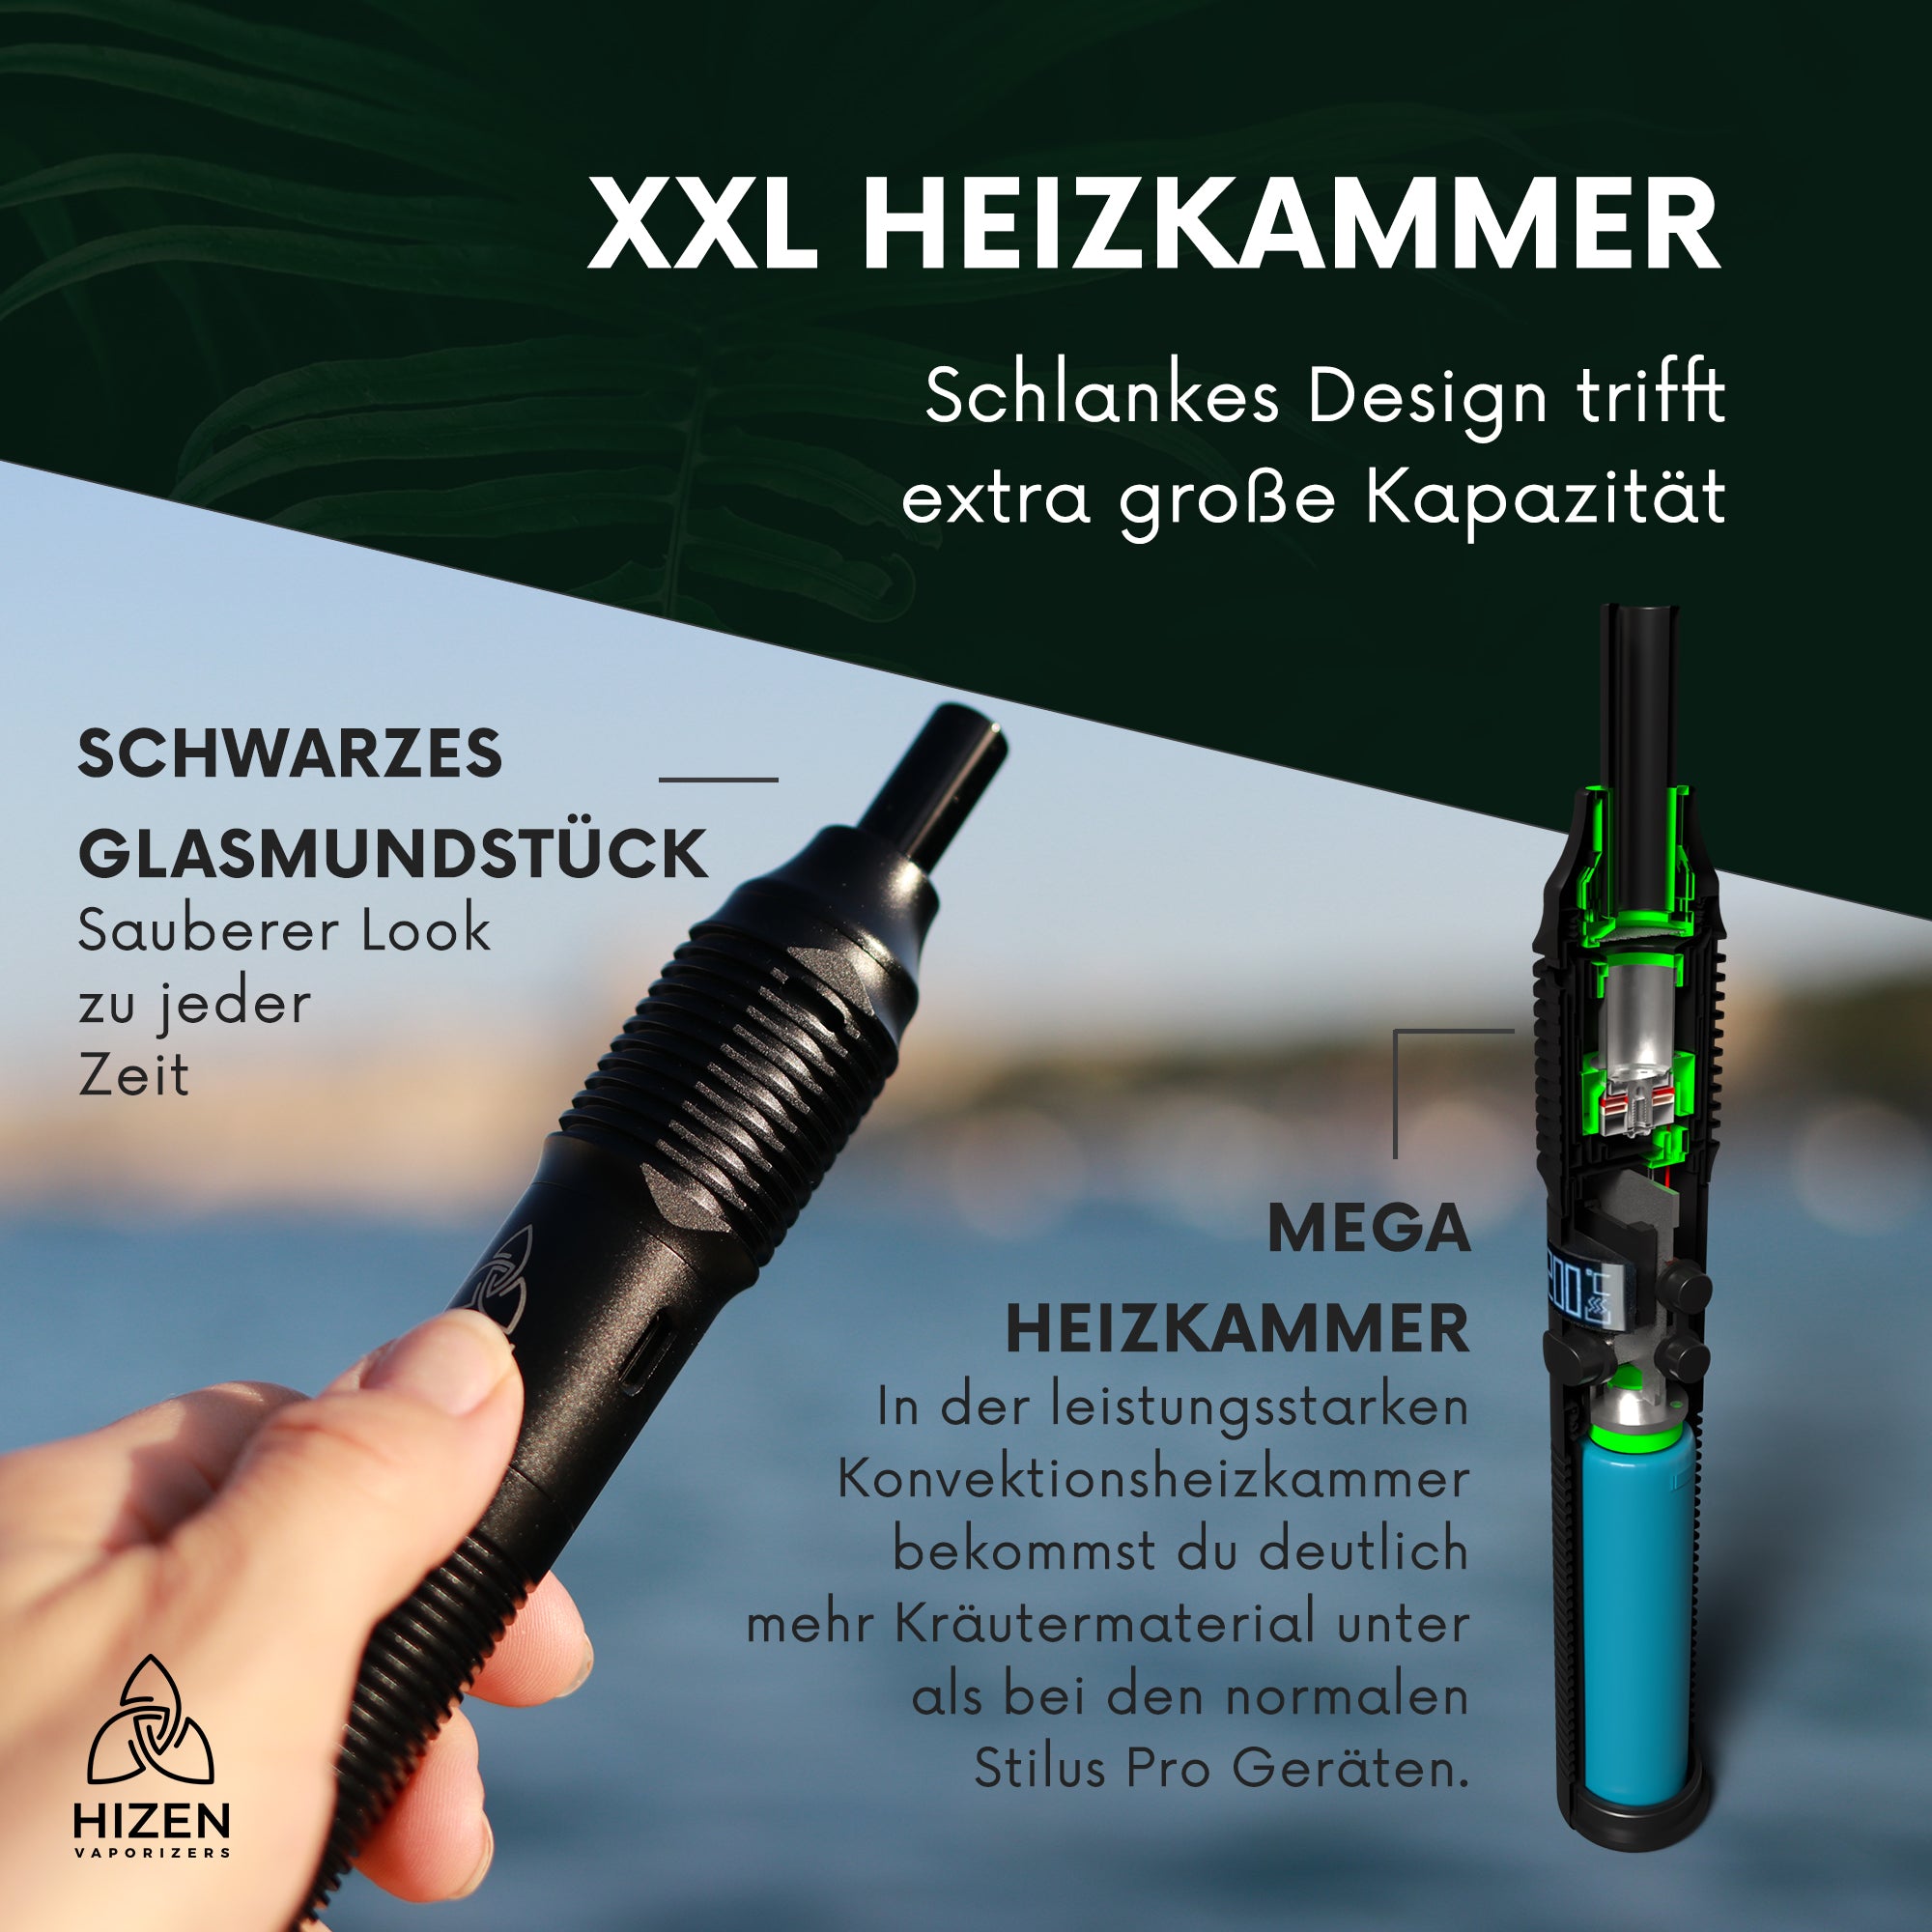 Stilus Pro Max XXL Heizkammer, schwarzes Glasmundstück und MEGA Heizkammer